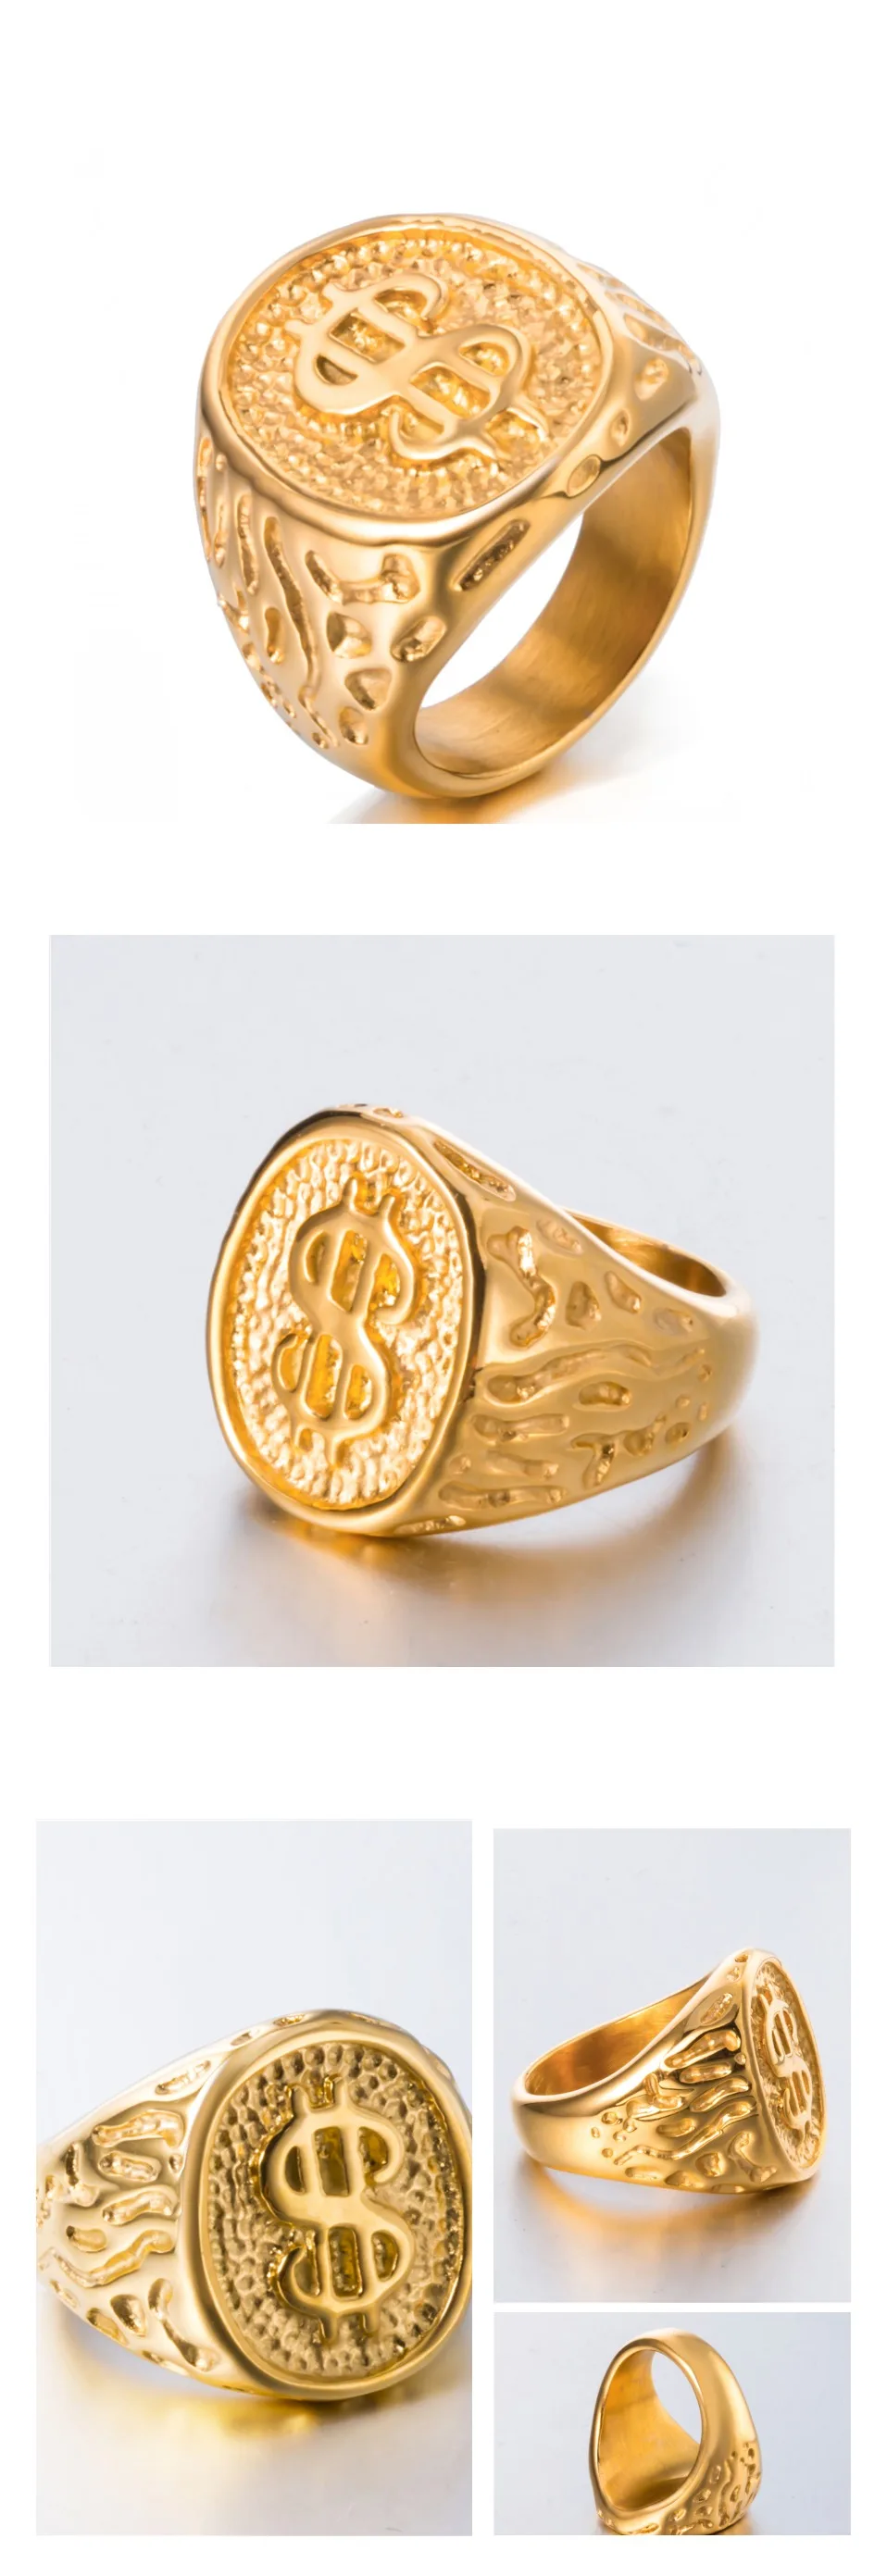 Золото$ деньги наличные доллар знак мужские Мальчики кольцо из нержавеющей стали хип-хоп ювелирные изделия Размер 8-14